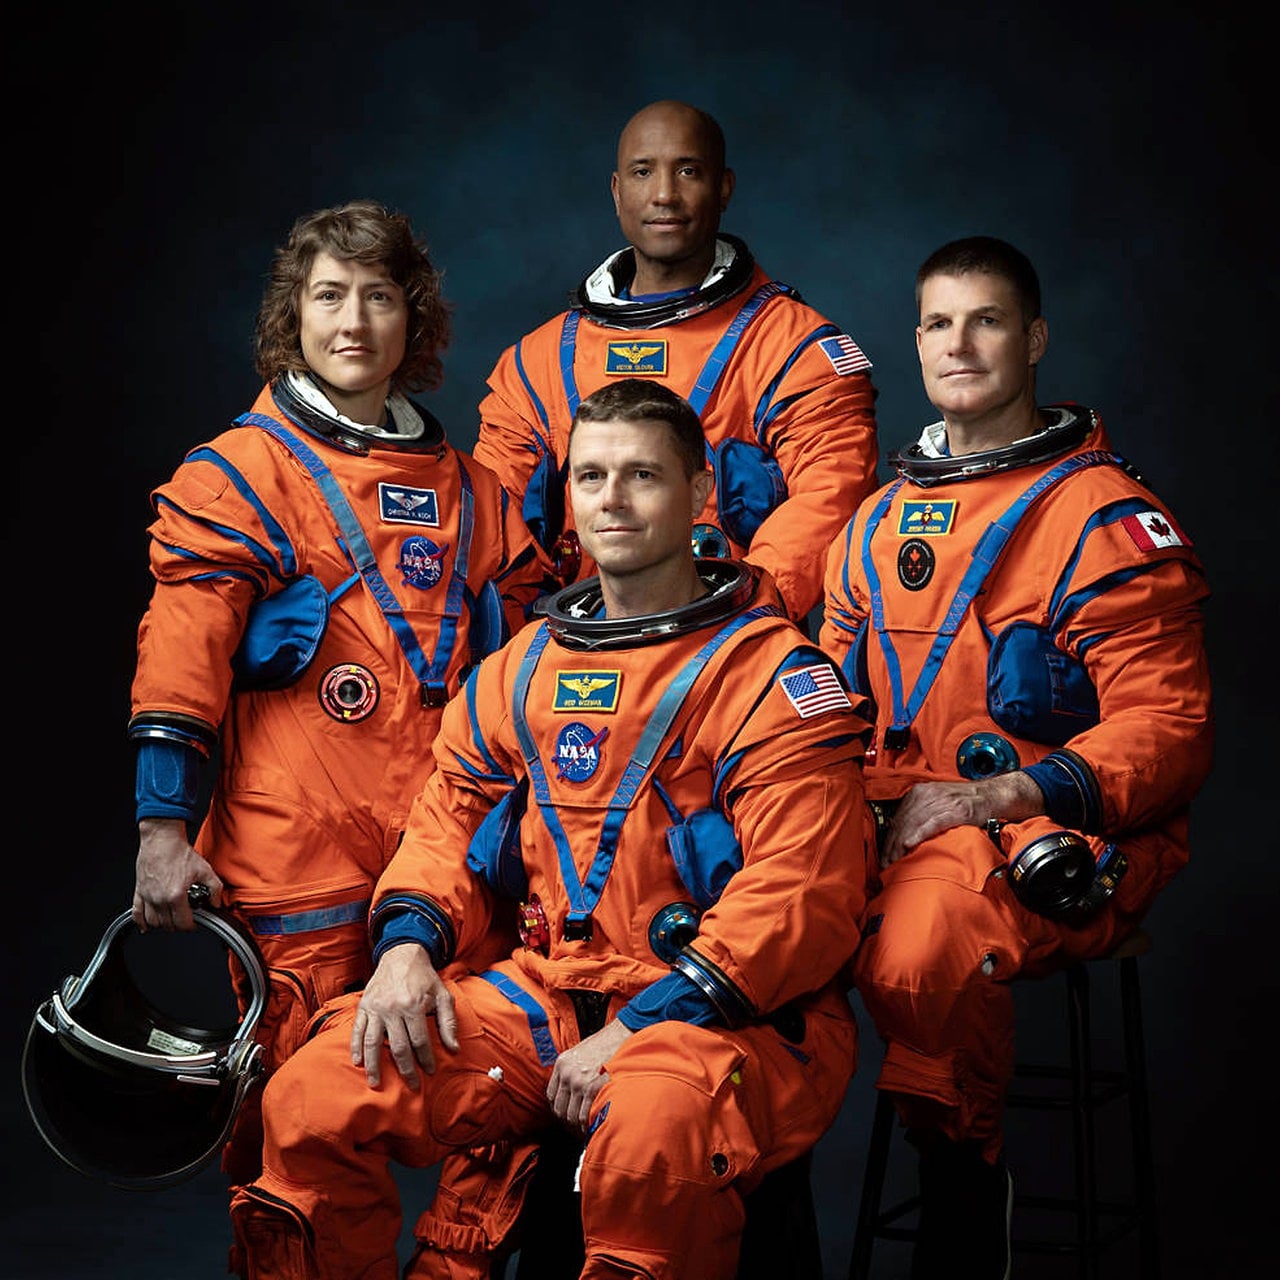 Das sind die vier Artemis-Astronauten für den Mond